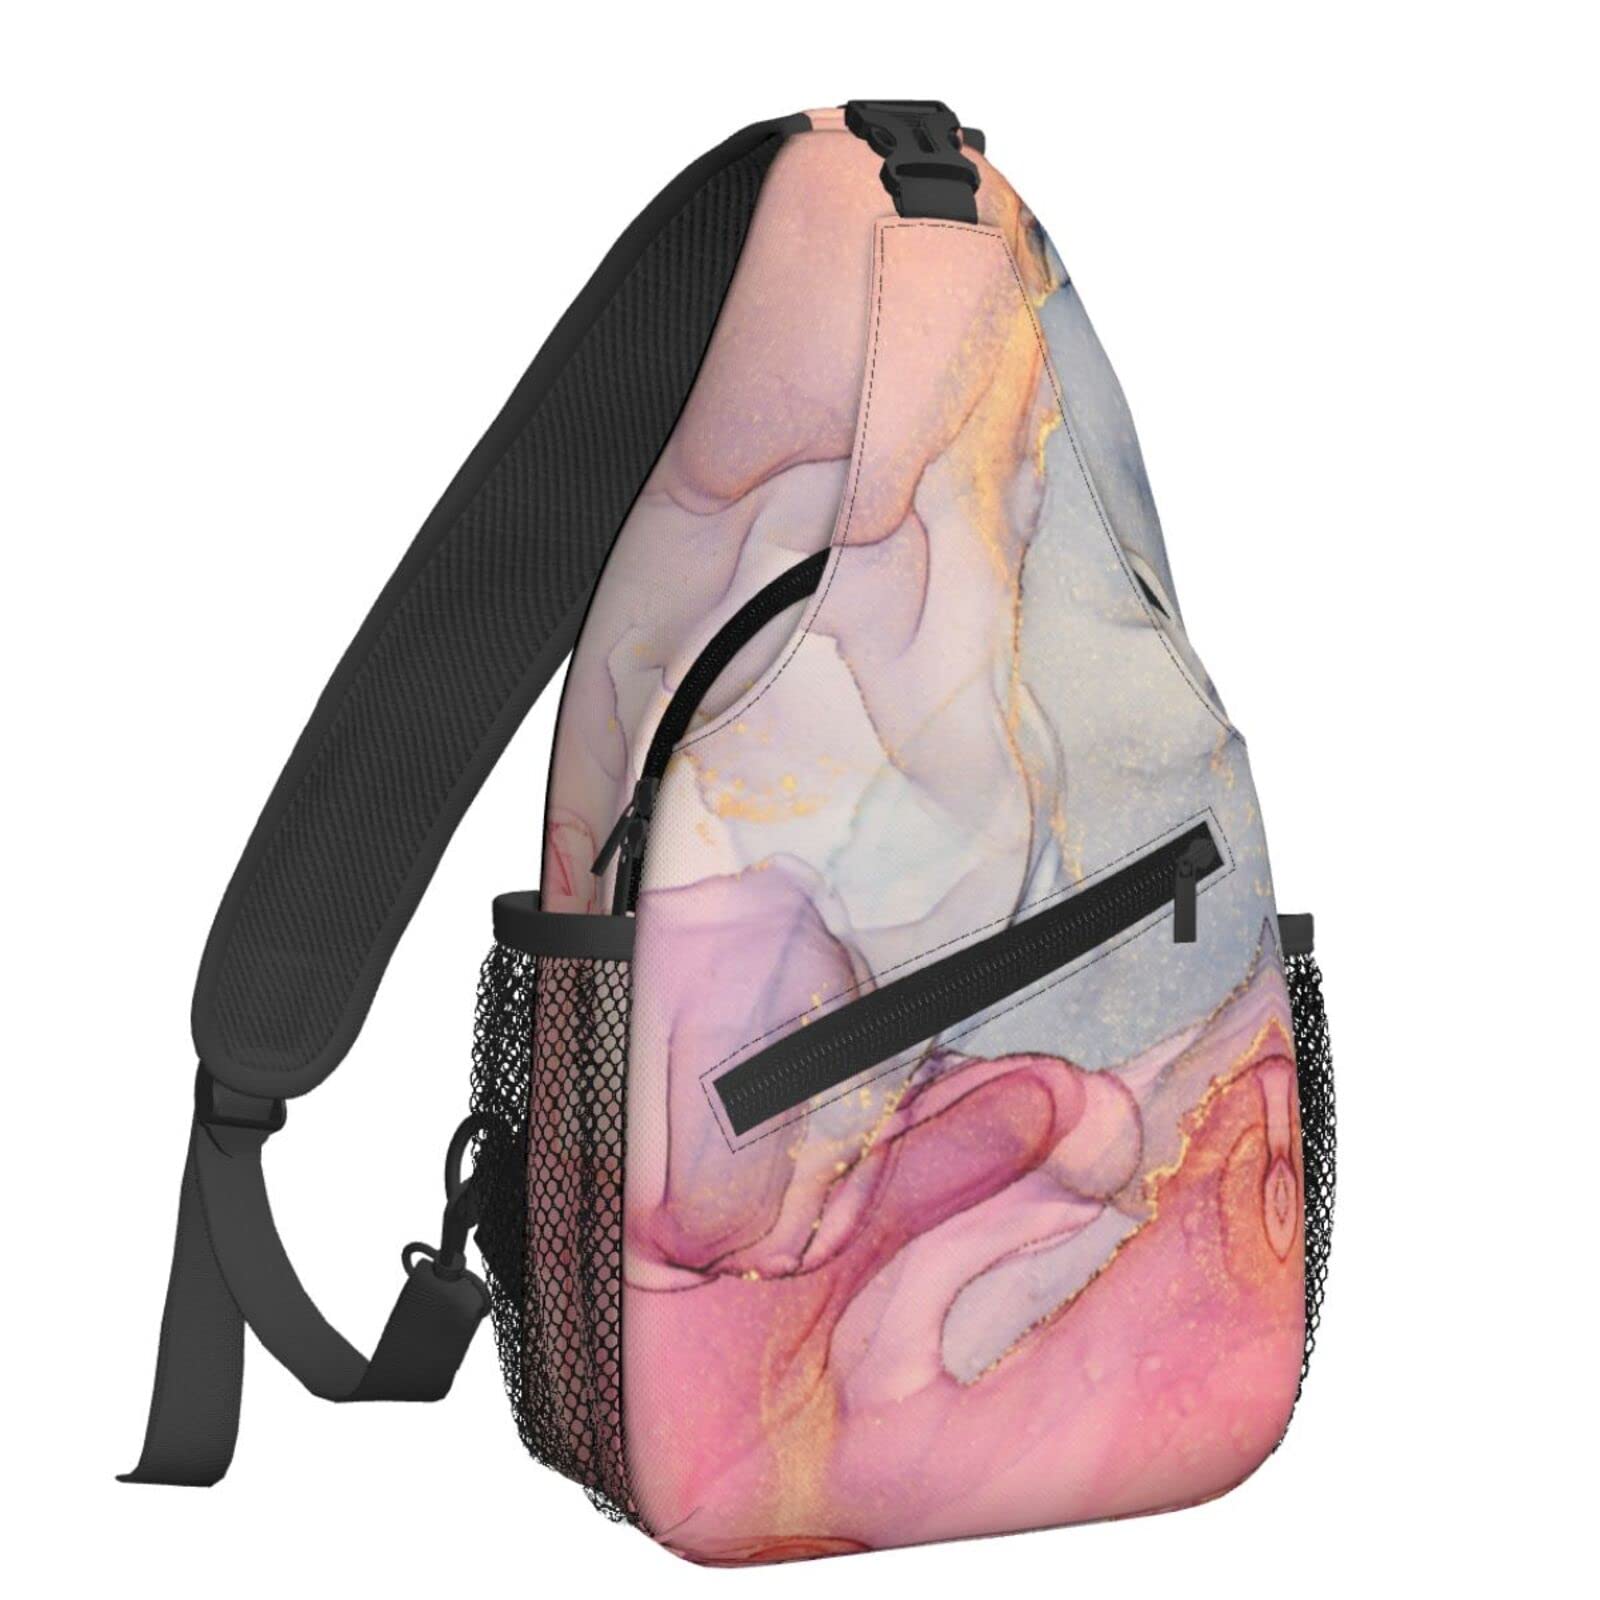 NiuKom Fluid Pink Sling Backpack Crossbody Chest Bag Shoulder Bag Gym Cycling Travel Hiking Daypack For Women Men